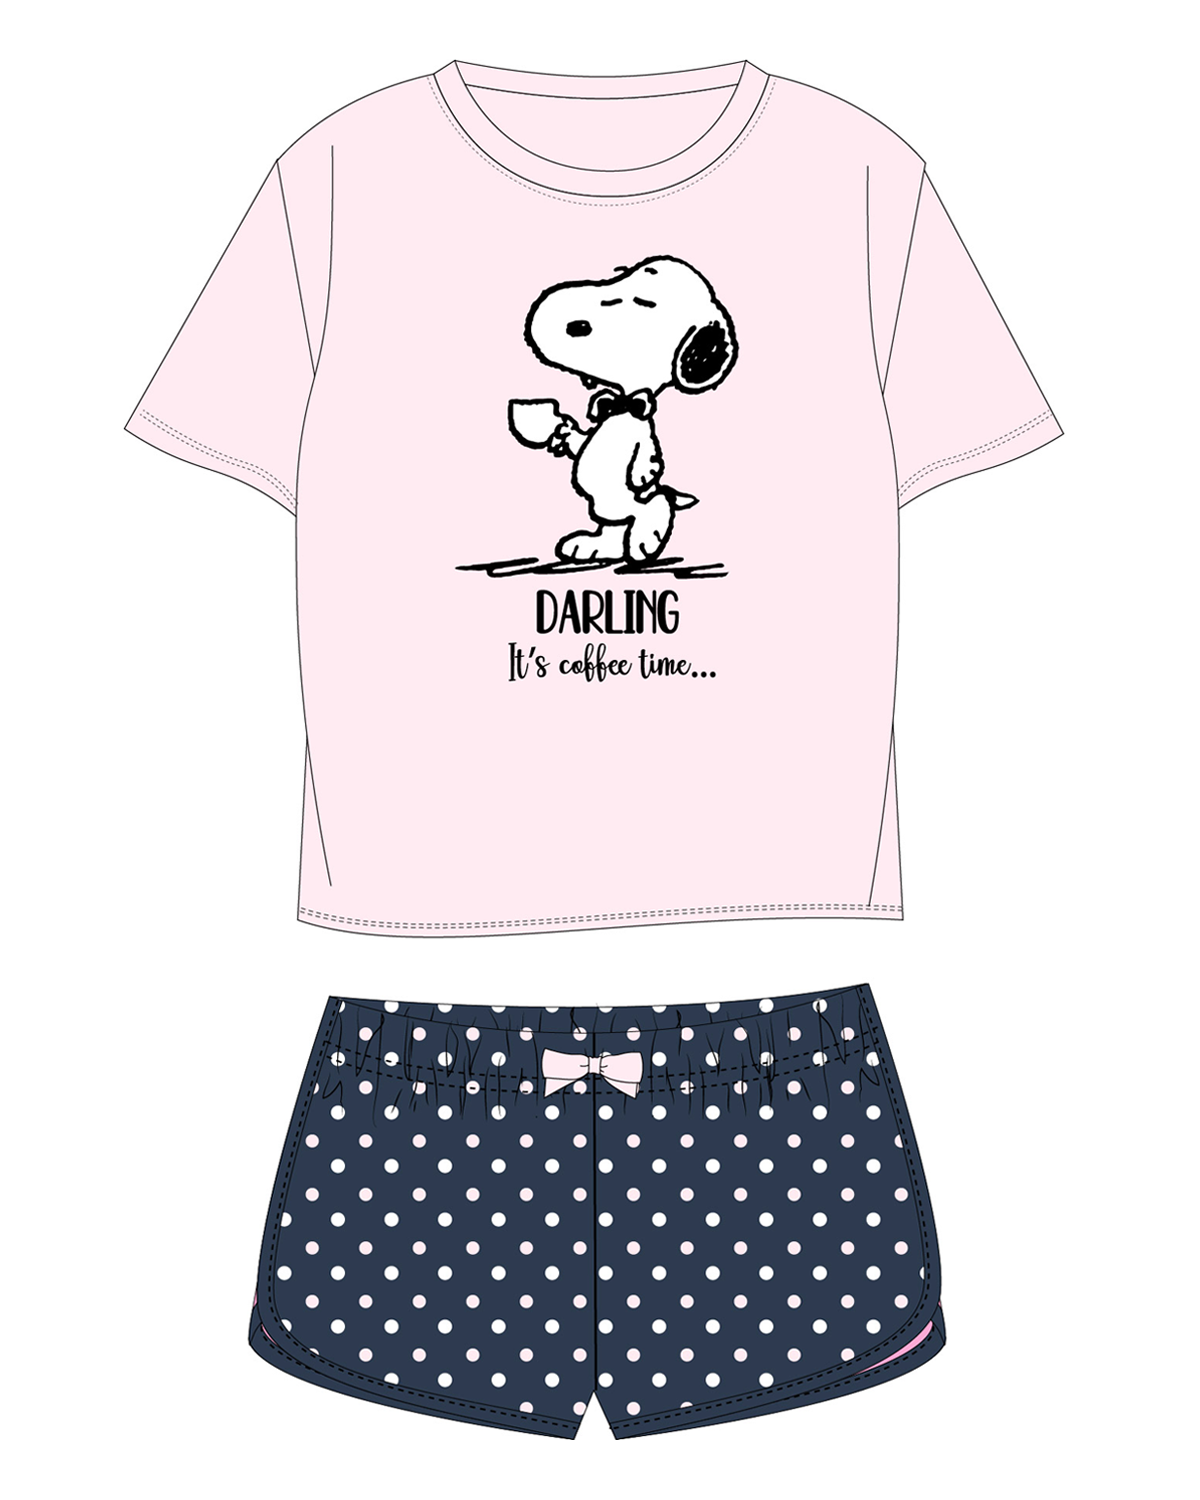 Snoopy - licence Dívčí pyžamo - Snoopy 5204570, lososová / tmavě modrá Barva: Lososová, Velikost: 140